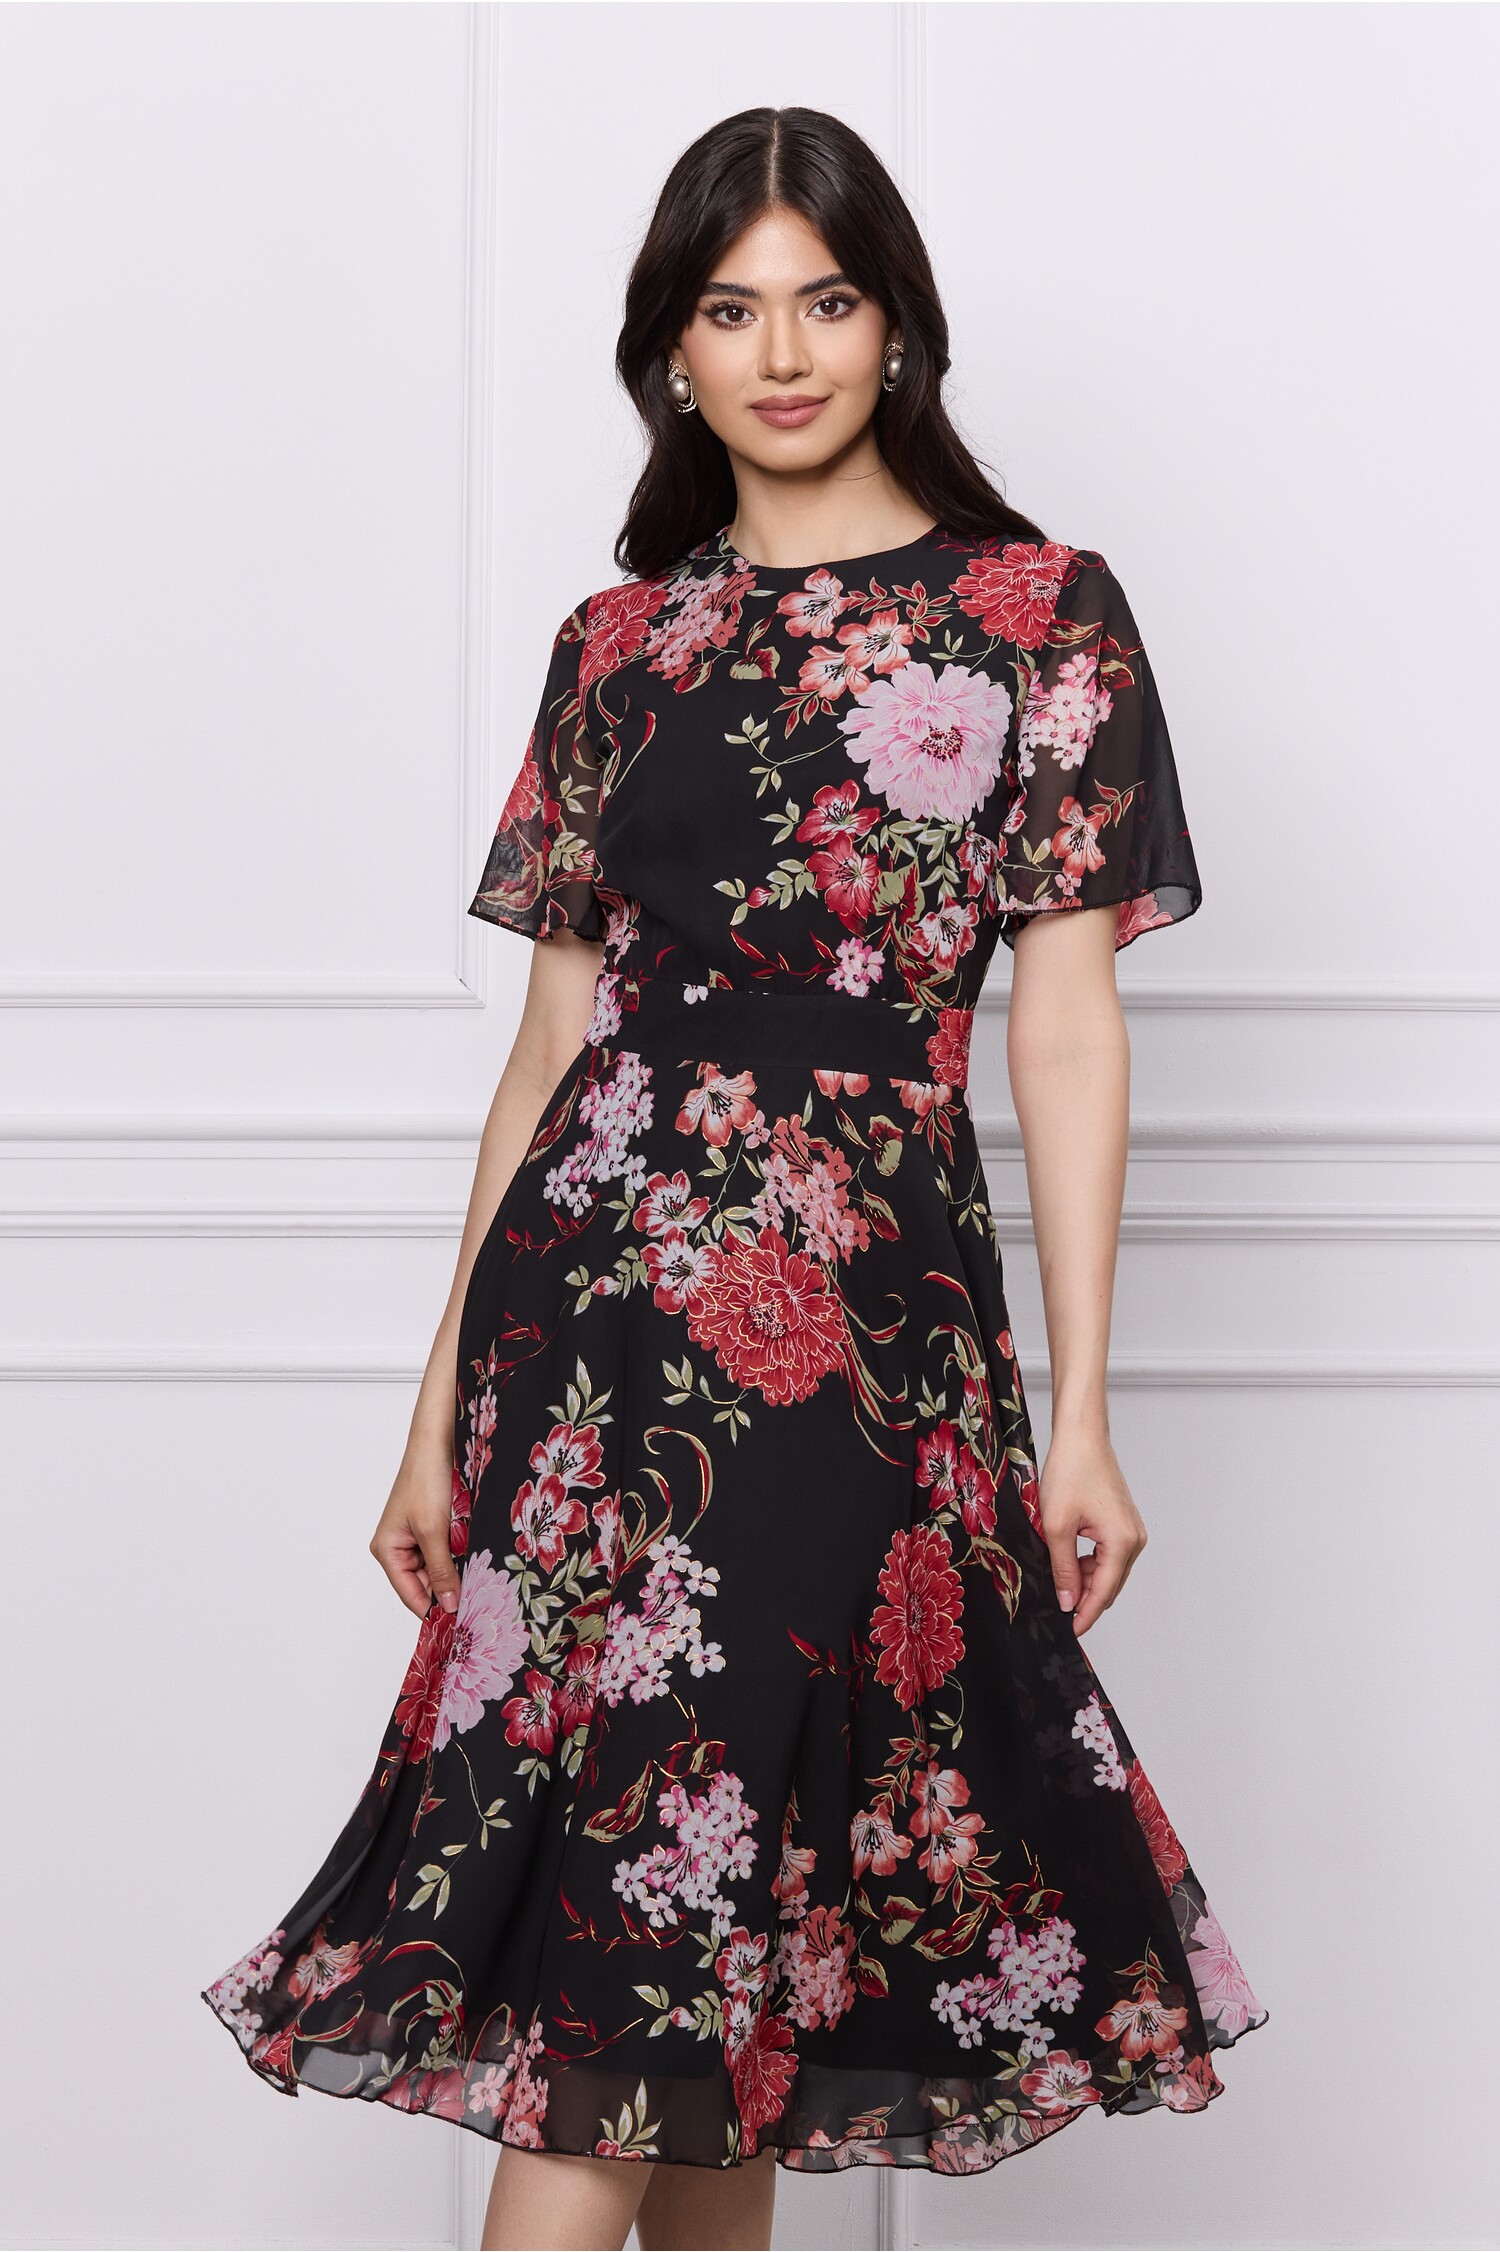 Rochie DY Fashion neagra din voal cu imprimeuri florale rosii